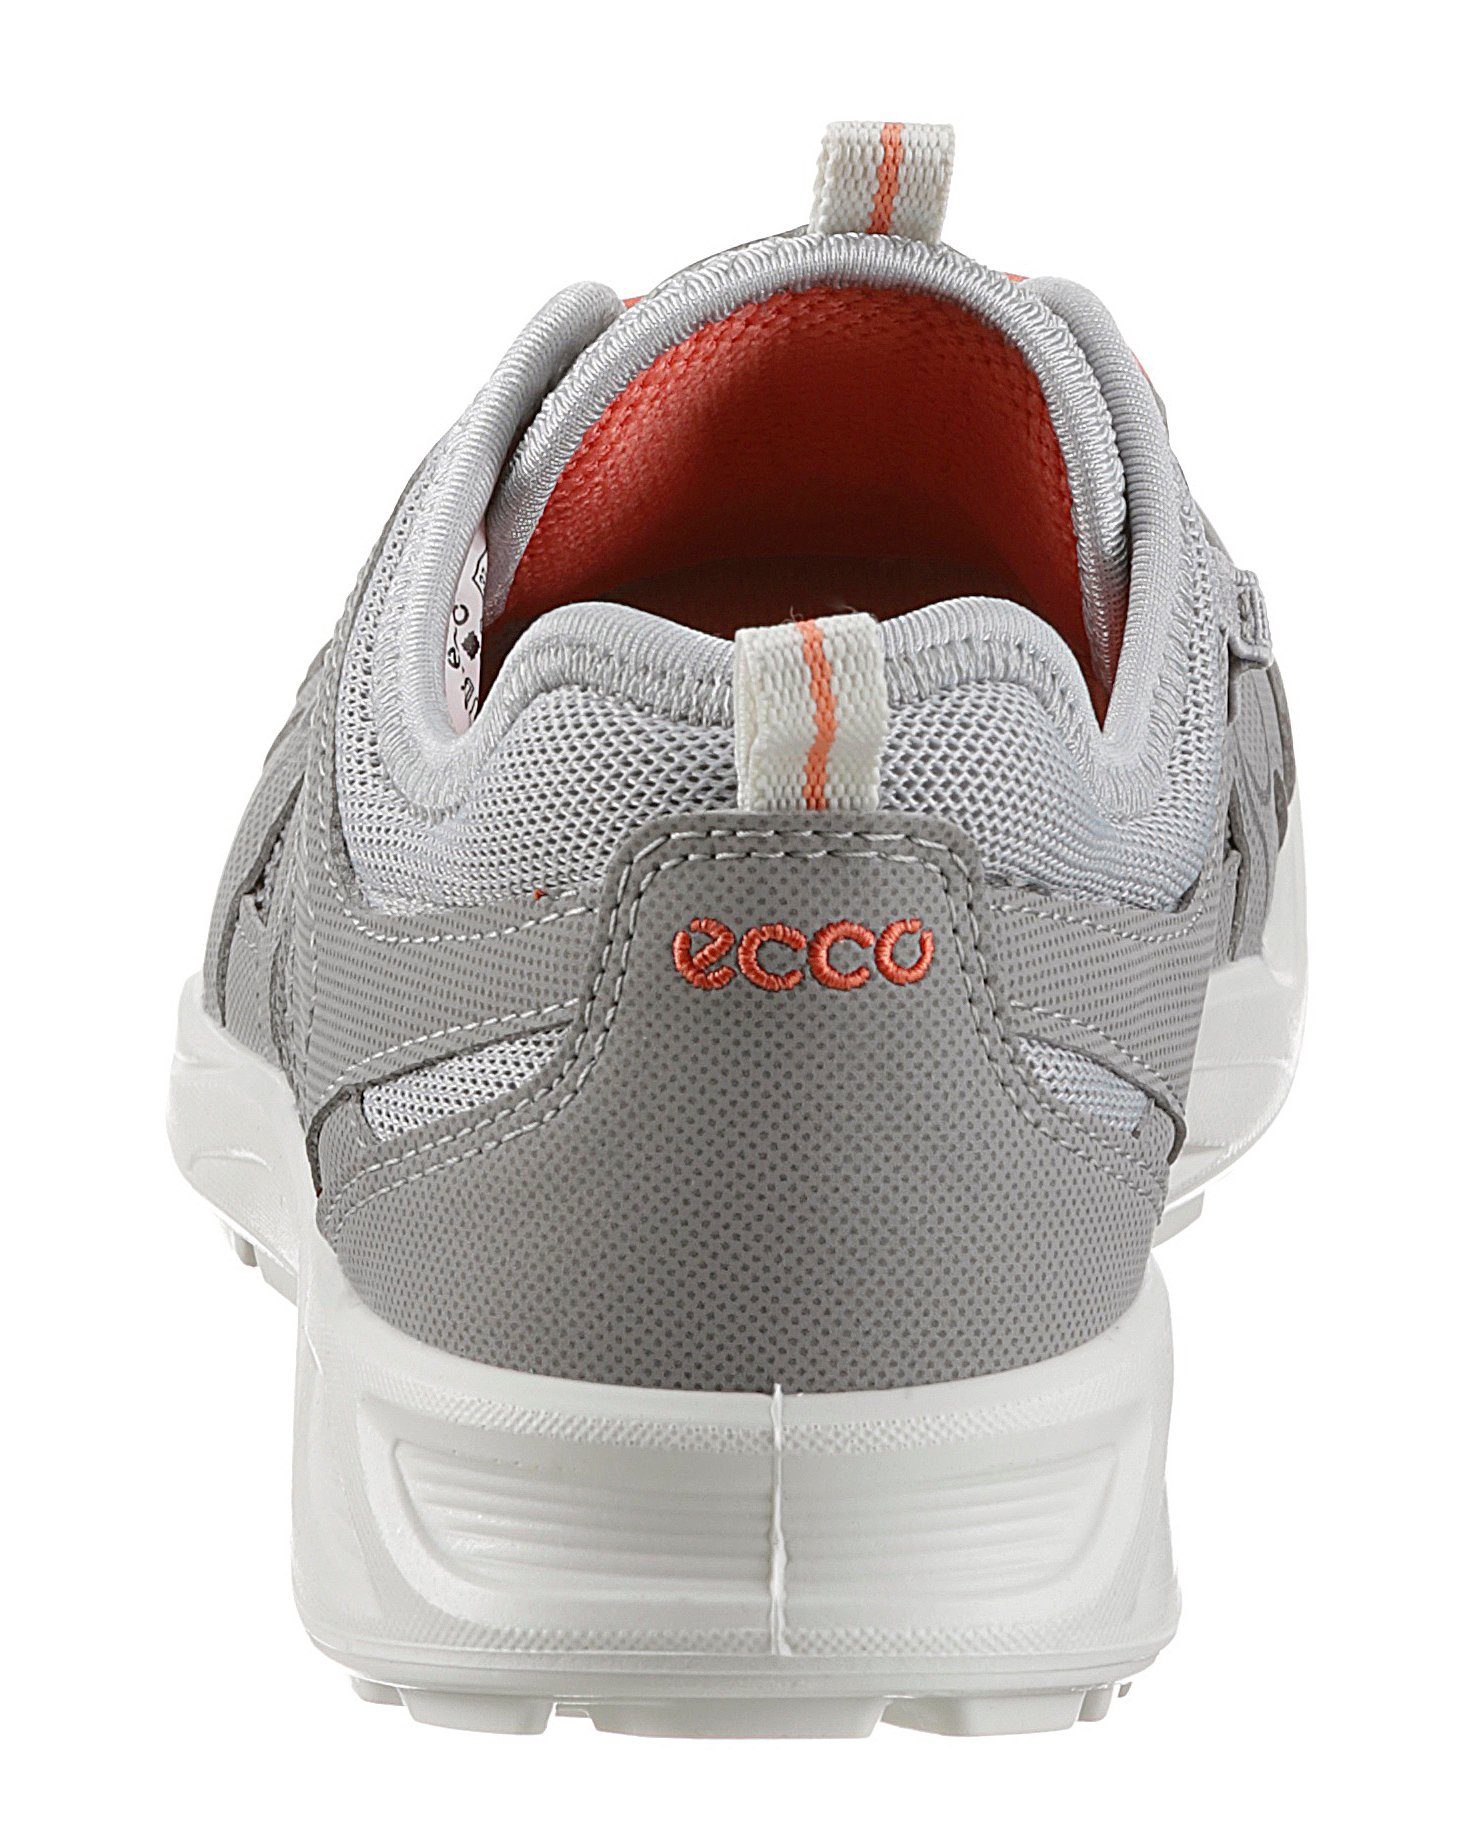 silberfarben W Ecco Schnellverschluss LT Sneaker mit Slip-On Terracruise praktischem